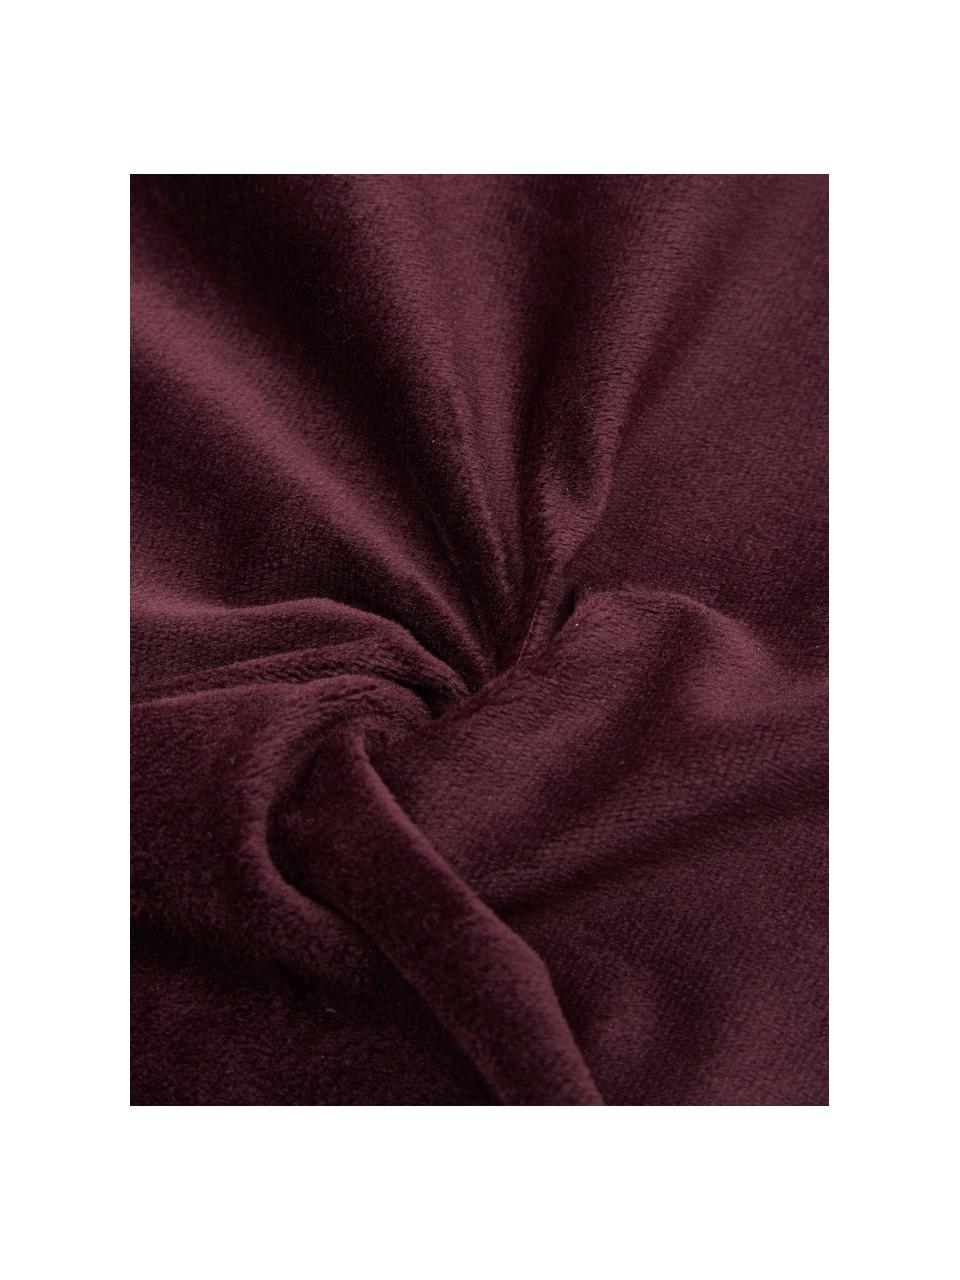 Poduszka z wypełnieniem Oscar, Tapicerka: 95% bawełna, 5% akryl, Burgundowy, S 50 x D 50 cm